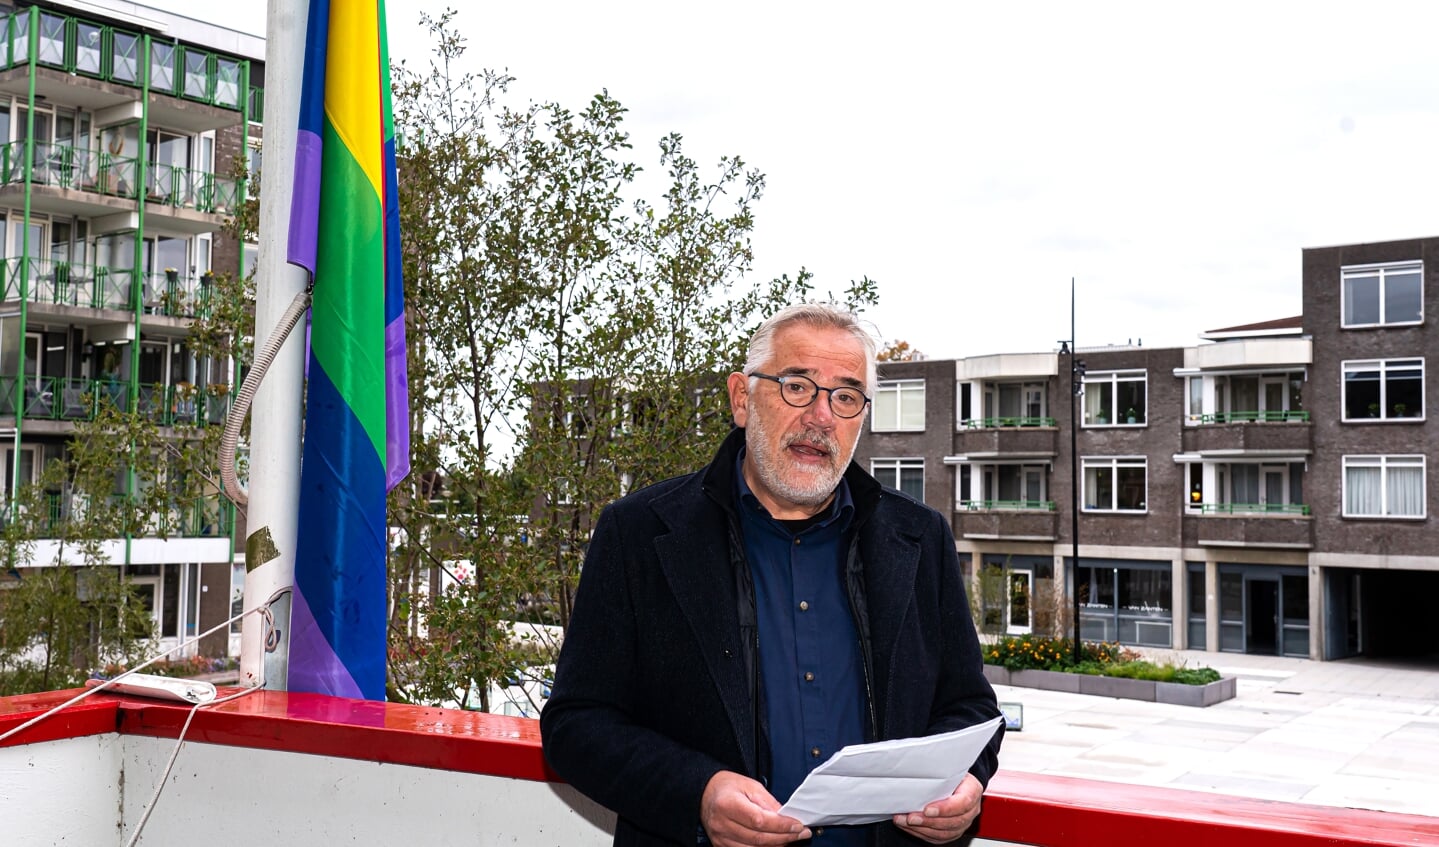 Wethouder Cees Taal van Vijfheerenlanden hijst samen met Maarten Venhovens van het COC Gorinchem de Regenboogvlag